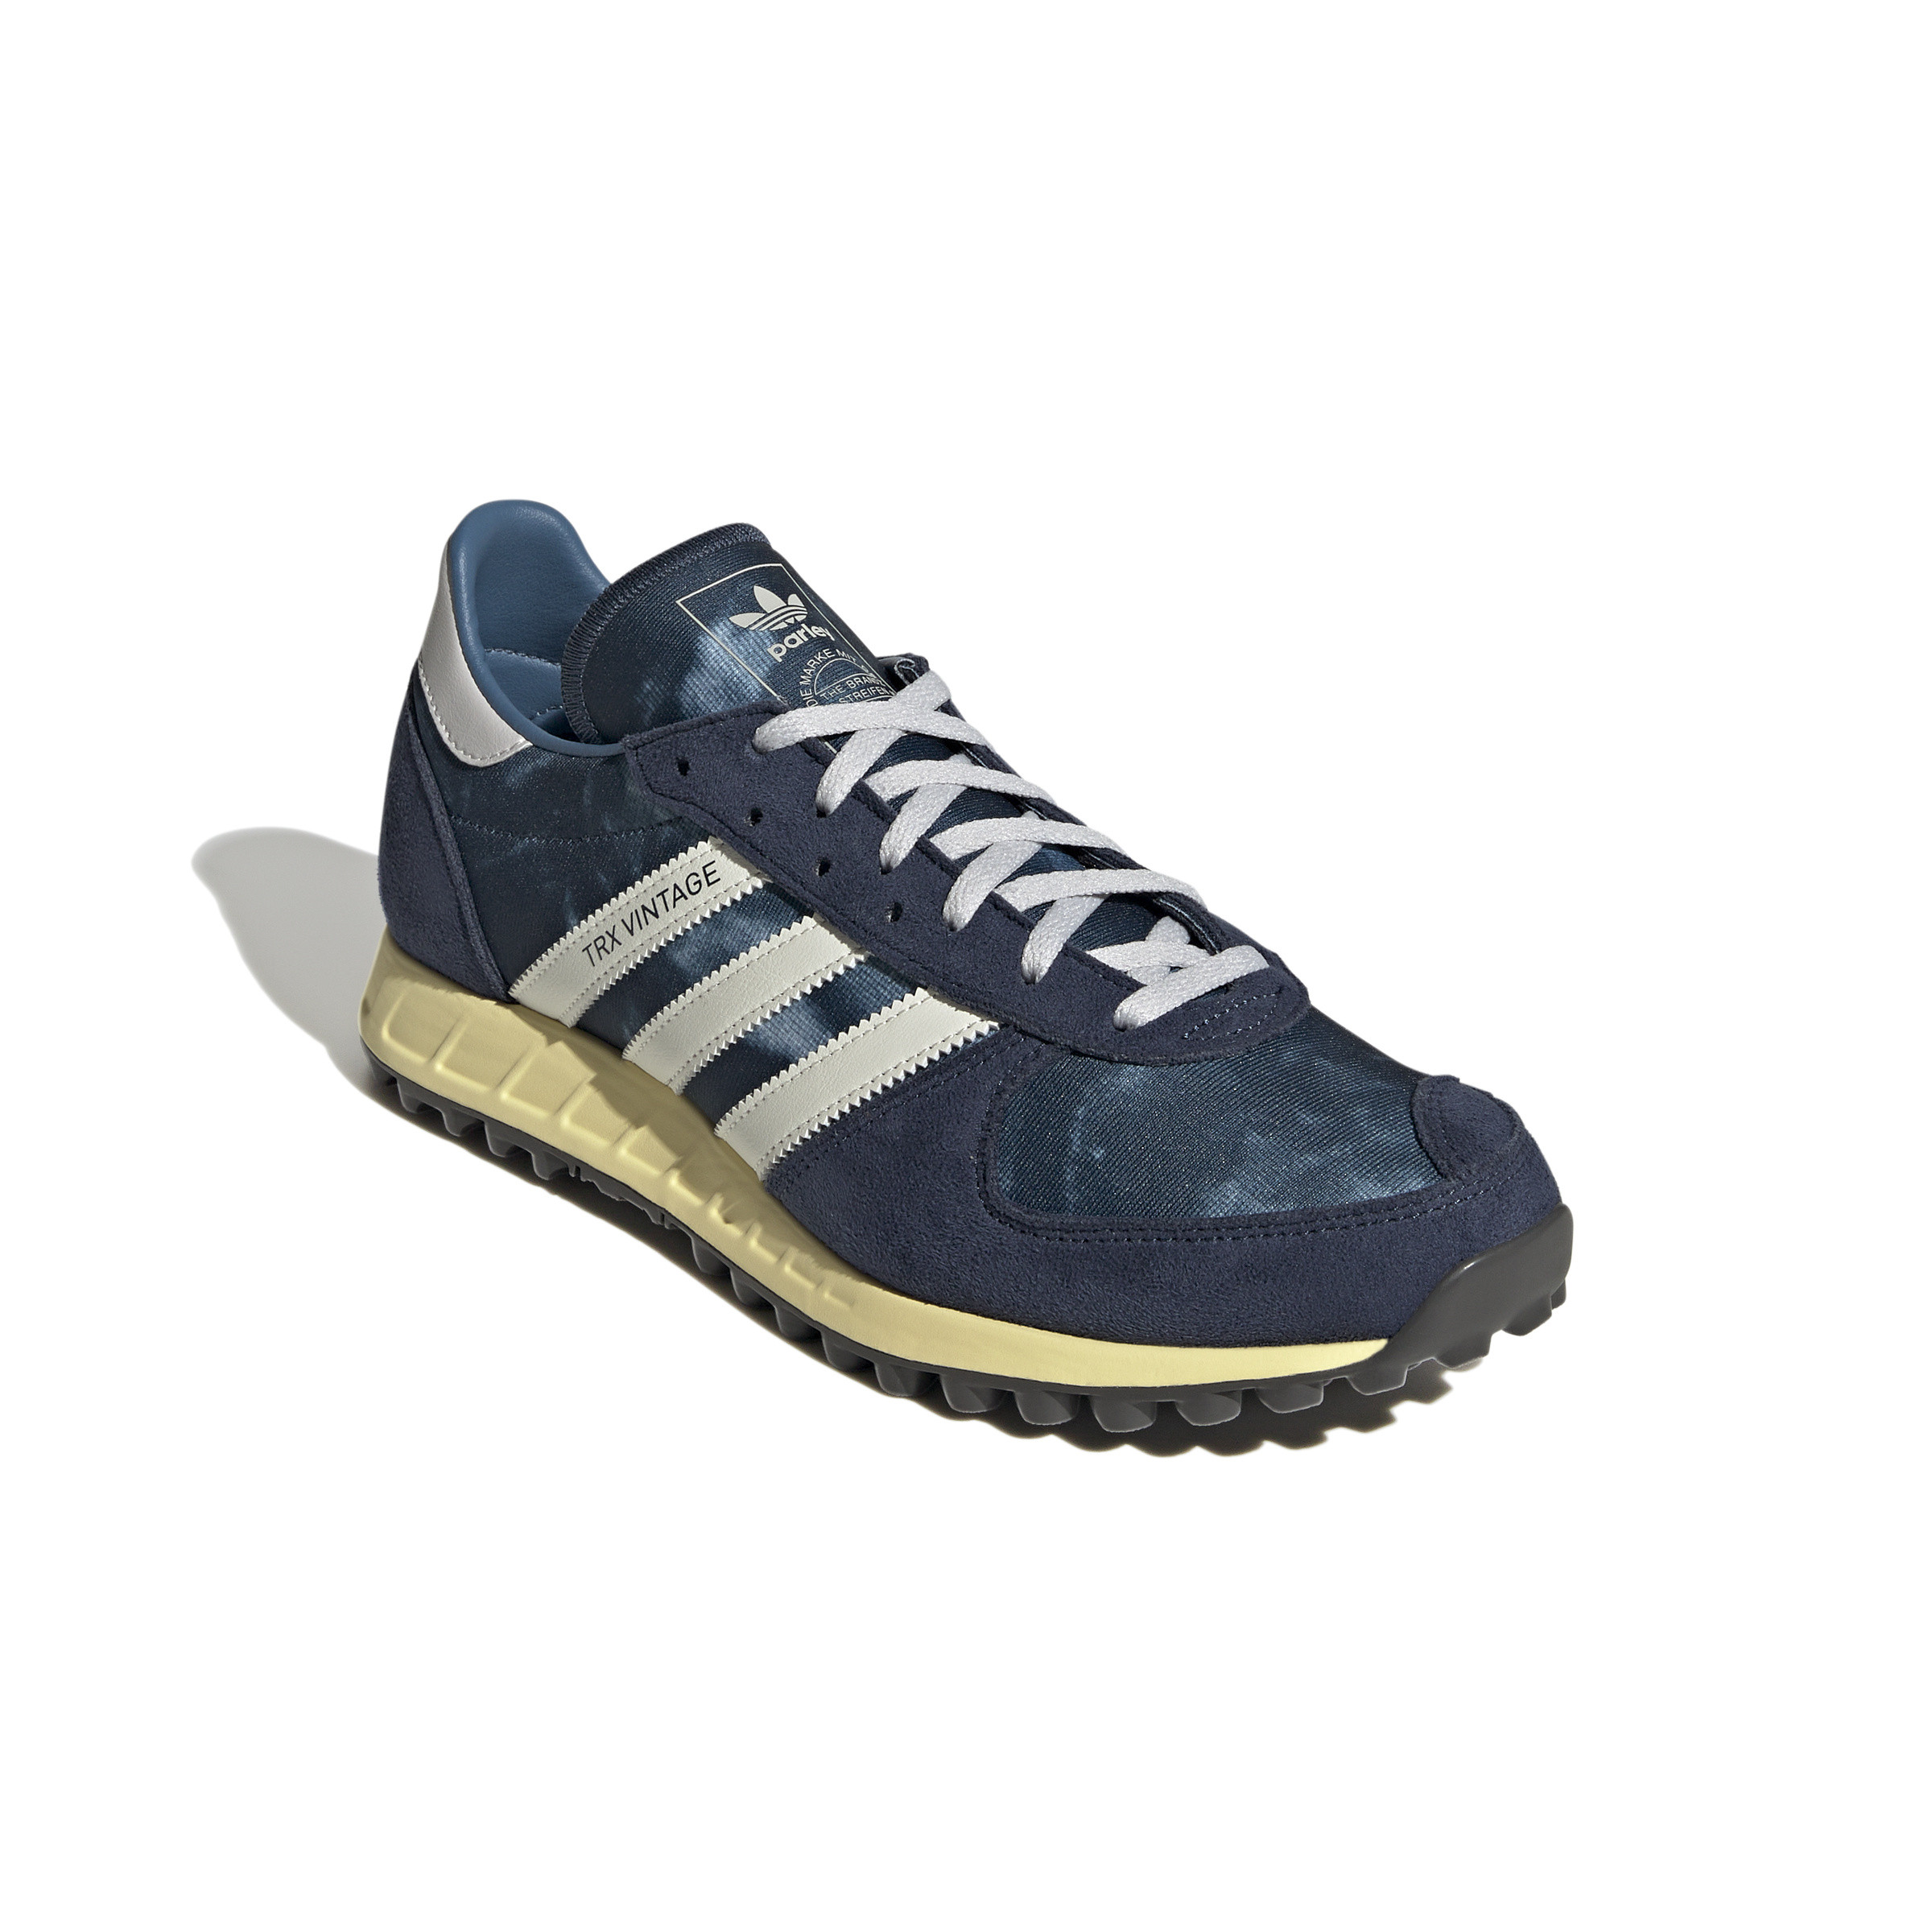 Adidas - Scarpe Adidas Trx Vintage, Blu, large image number 4